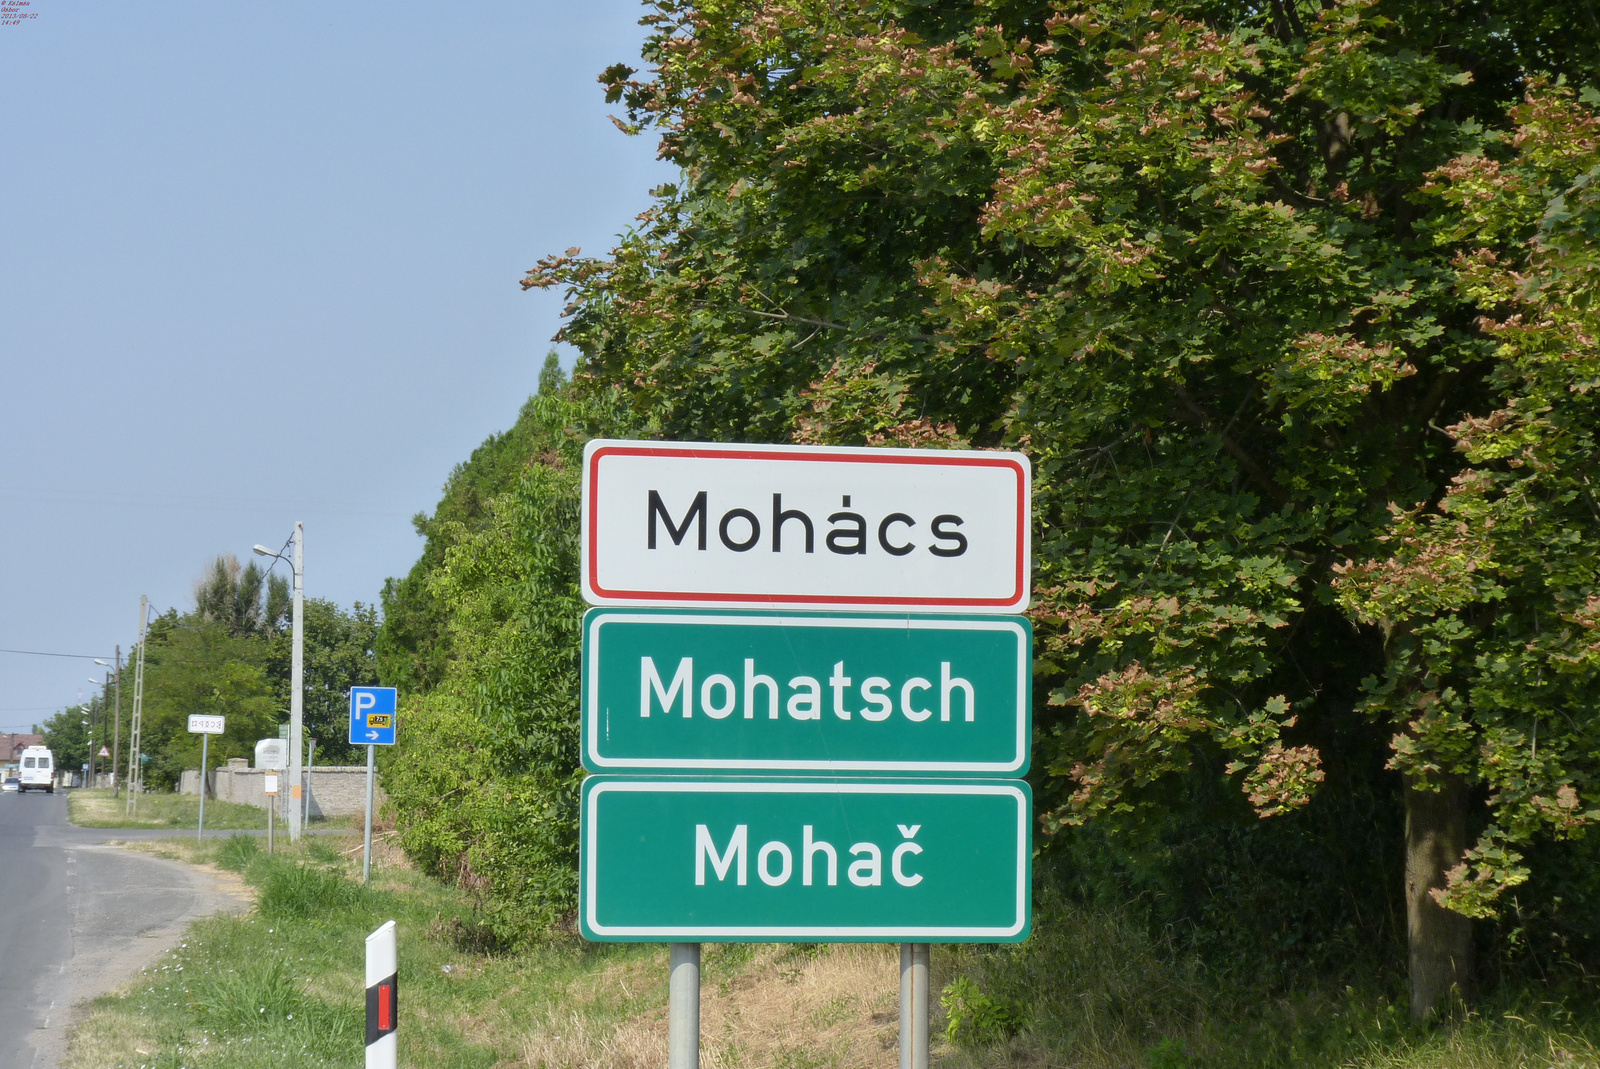 1340 - Mohács